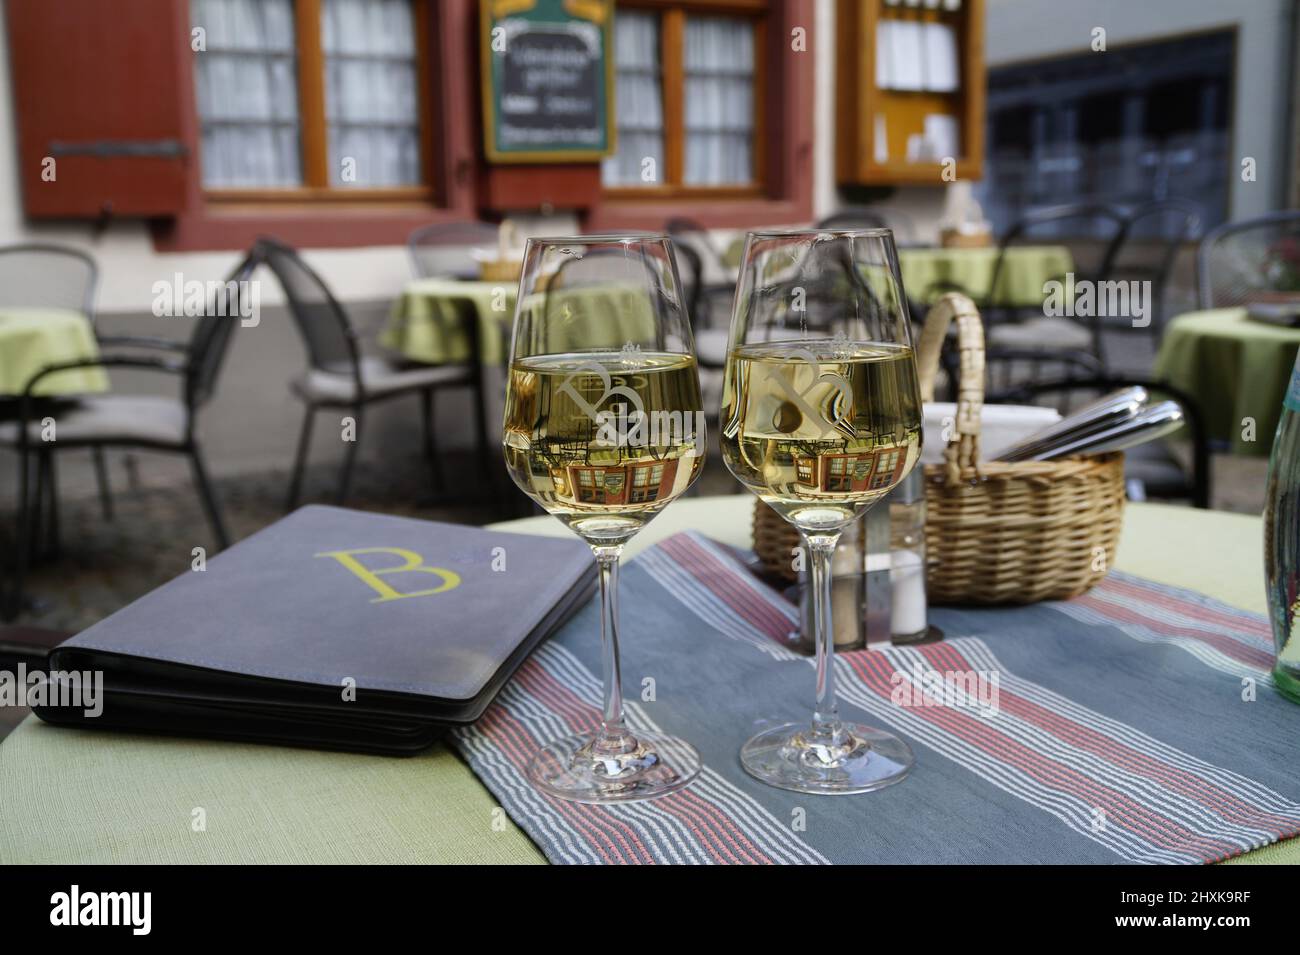 Cena e cena per due nella romantica cittadina di Bacharach sul Reno (Rhein), Germania Foto Stock